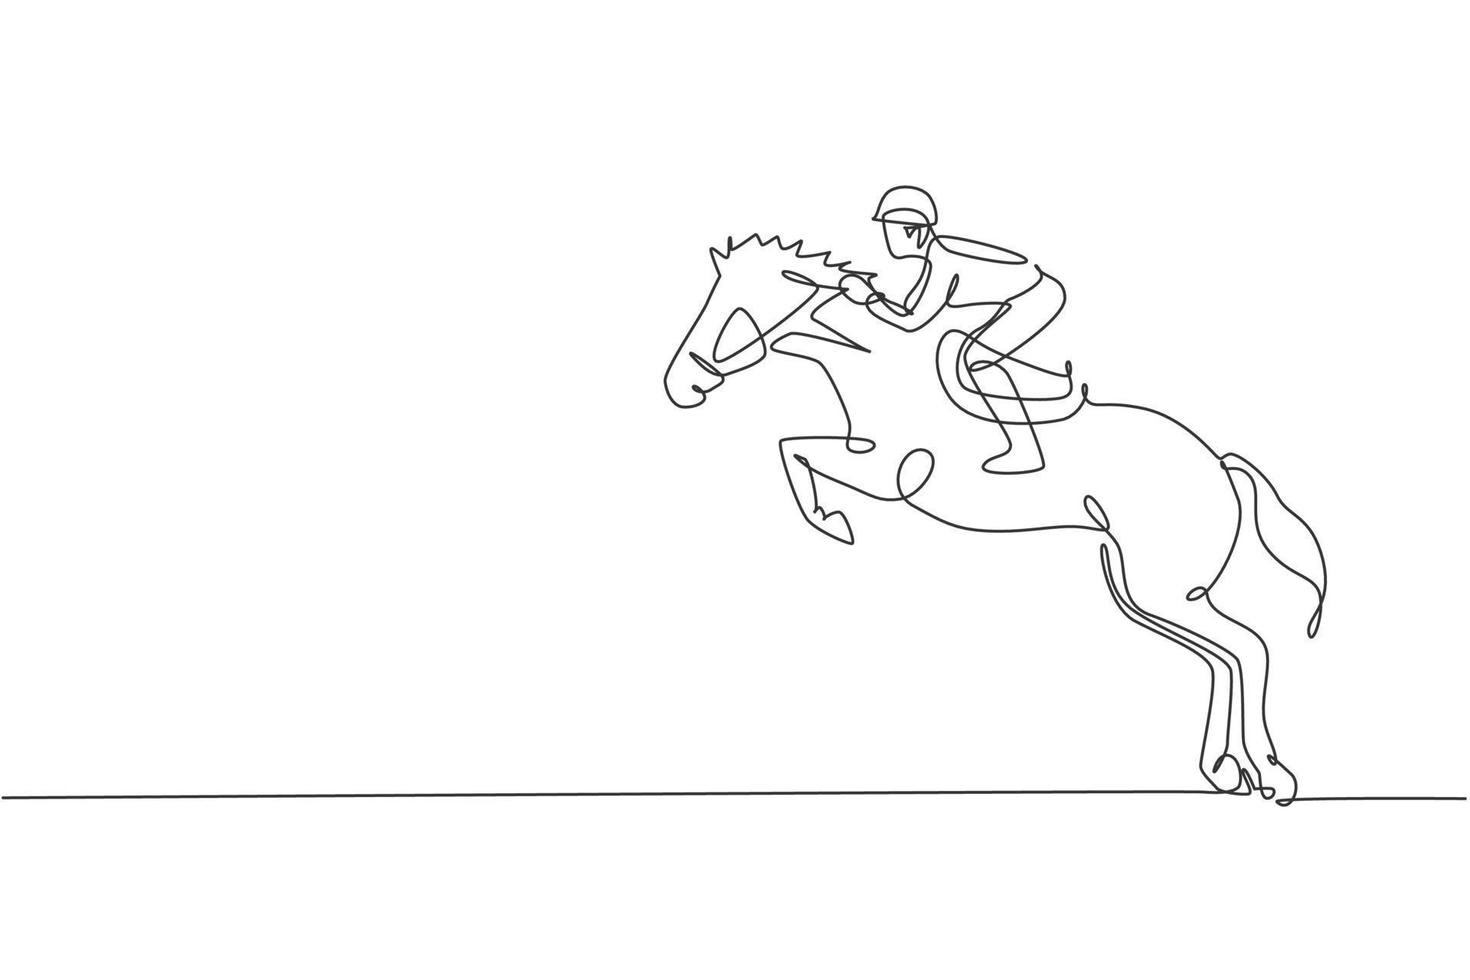 um único desenho de linha do homem jovem cavaleiro realizando ilustração gráfica vetorial de teste de salto de adestramento. conceito de competição de espetáculo de esporte equestre. design moderno de desenho de linha contínua vetor